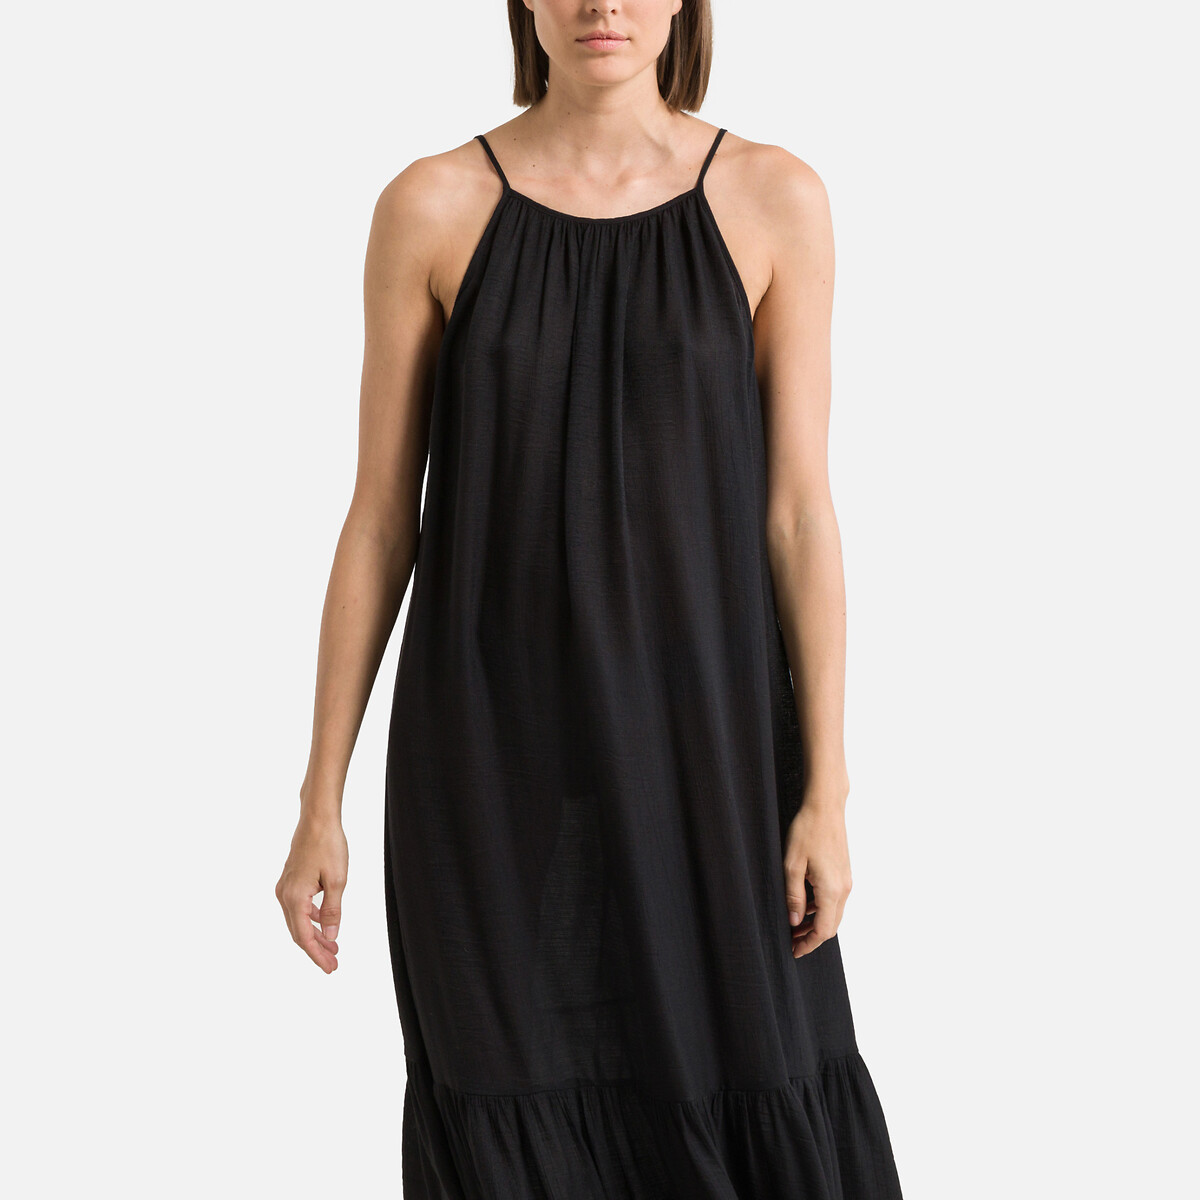 Платье Длинное с тонкими бретелями 3(L) черный LaRedoute, размер 3(L) Платье Длинное с тонкими бретелями 3(L) черный - фото 2